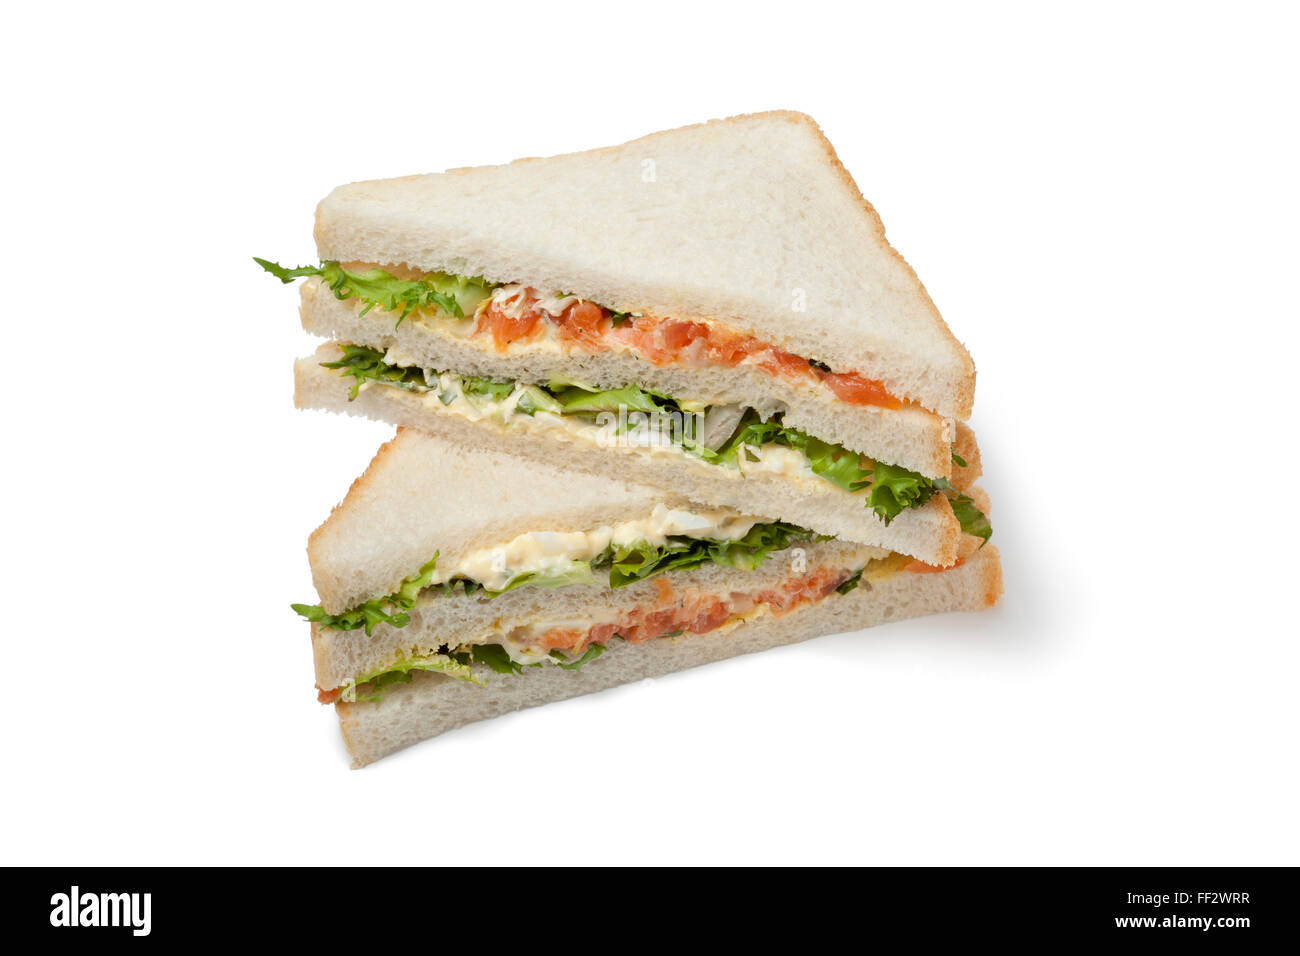 El salmón fresco y club sándwich de huevo sobre fondo blanco. Foto de stock